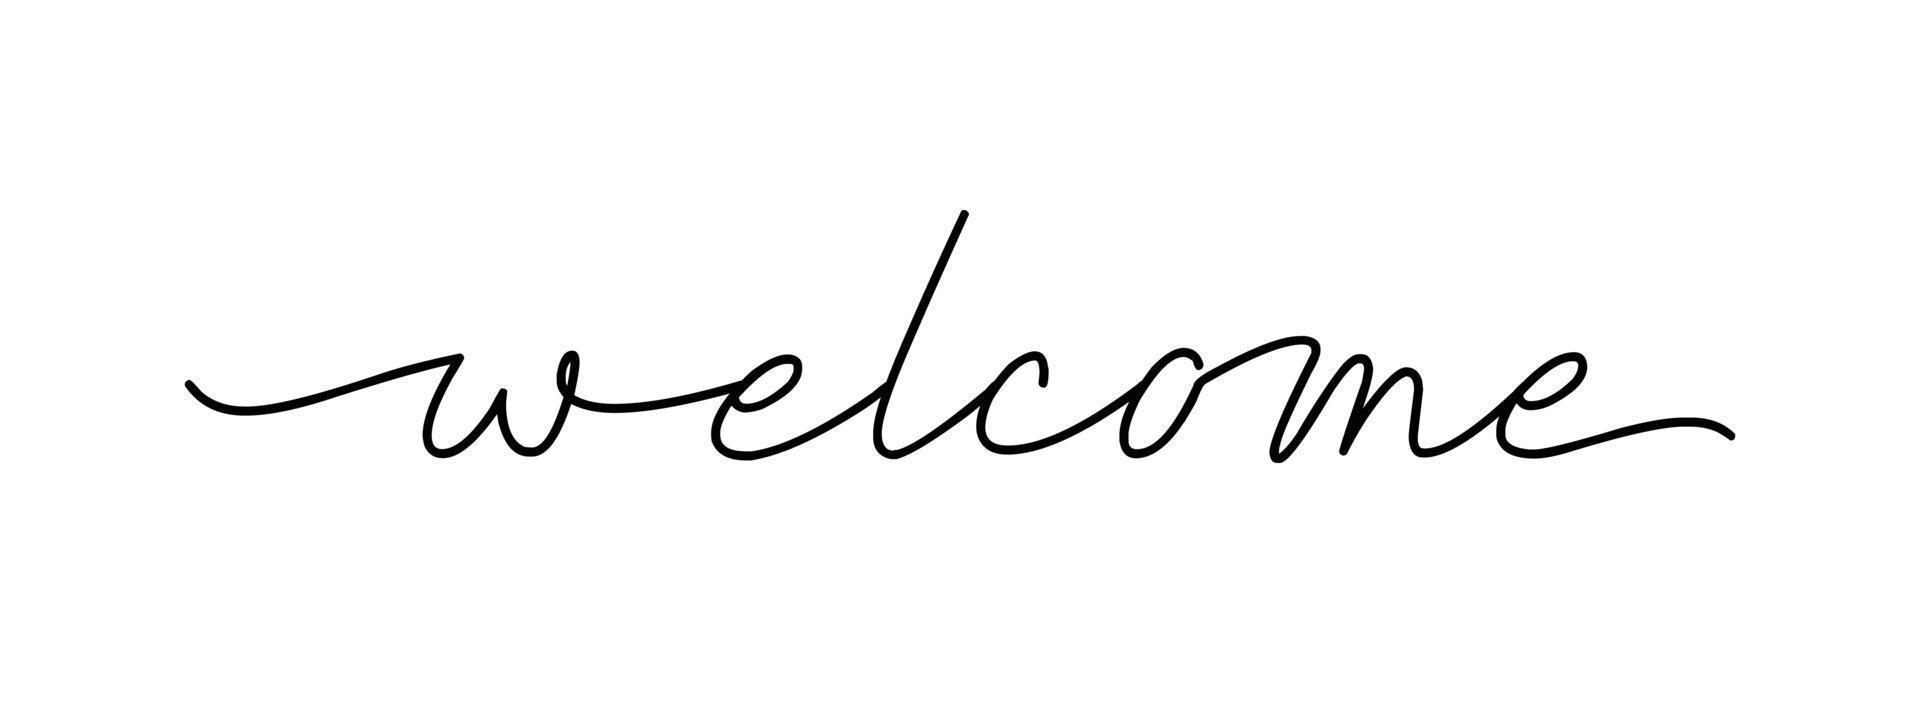 bienvenido - letras de tinta negra vectorial aisladas sobre fondo blanco. tarjeta de bienvenida de caligrafía cursiva continua de una línea vector